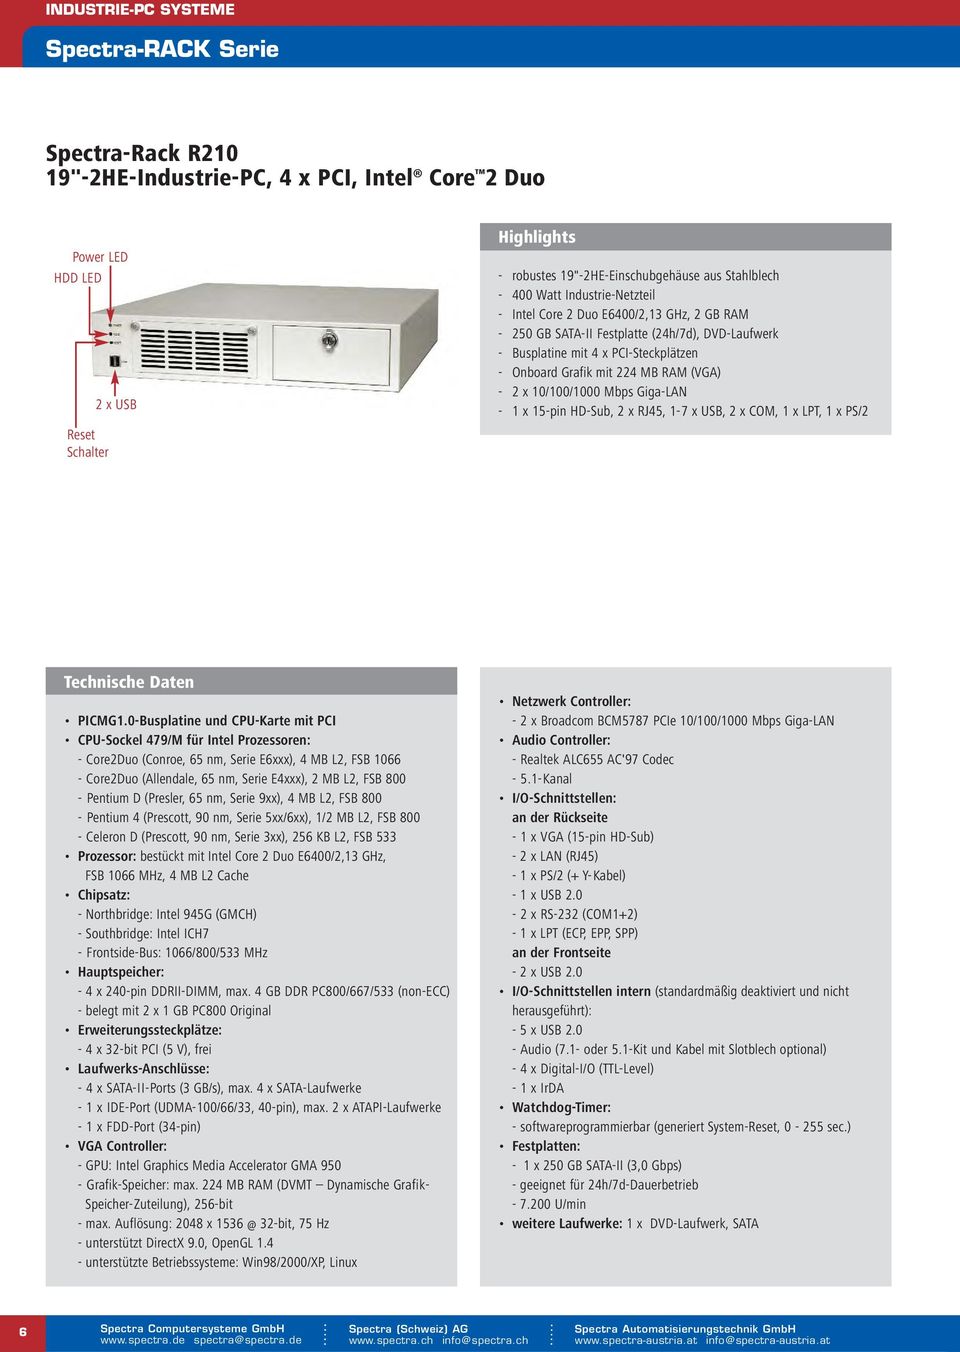 10/100/1000 Mbps Giga-LAN - 1 x 15-pin HD-Sub, 2 x RJ45, 1-7 x USB, 2 x COM, 1 x LPT, 1 x PS/2 Technische Daten PICMG1.